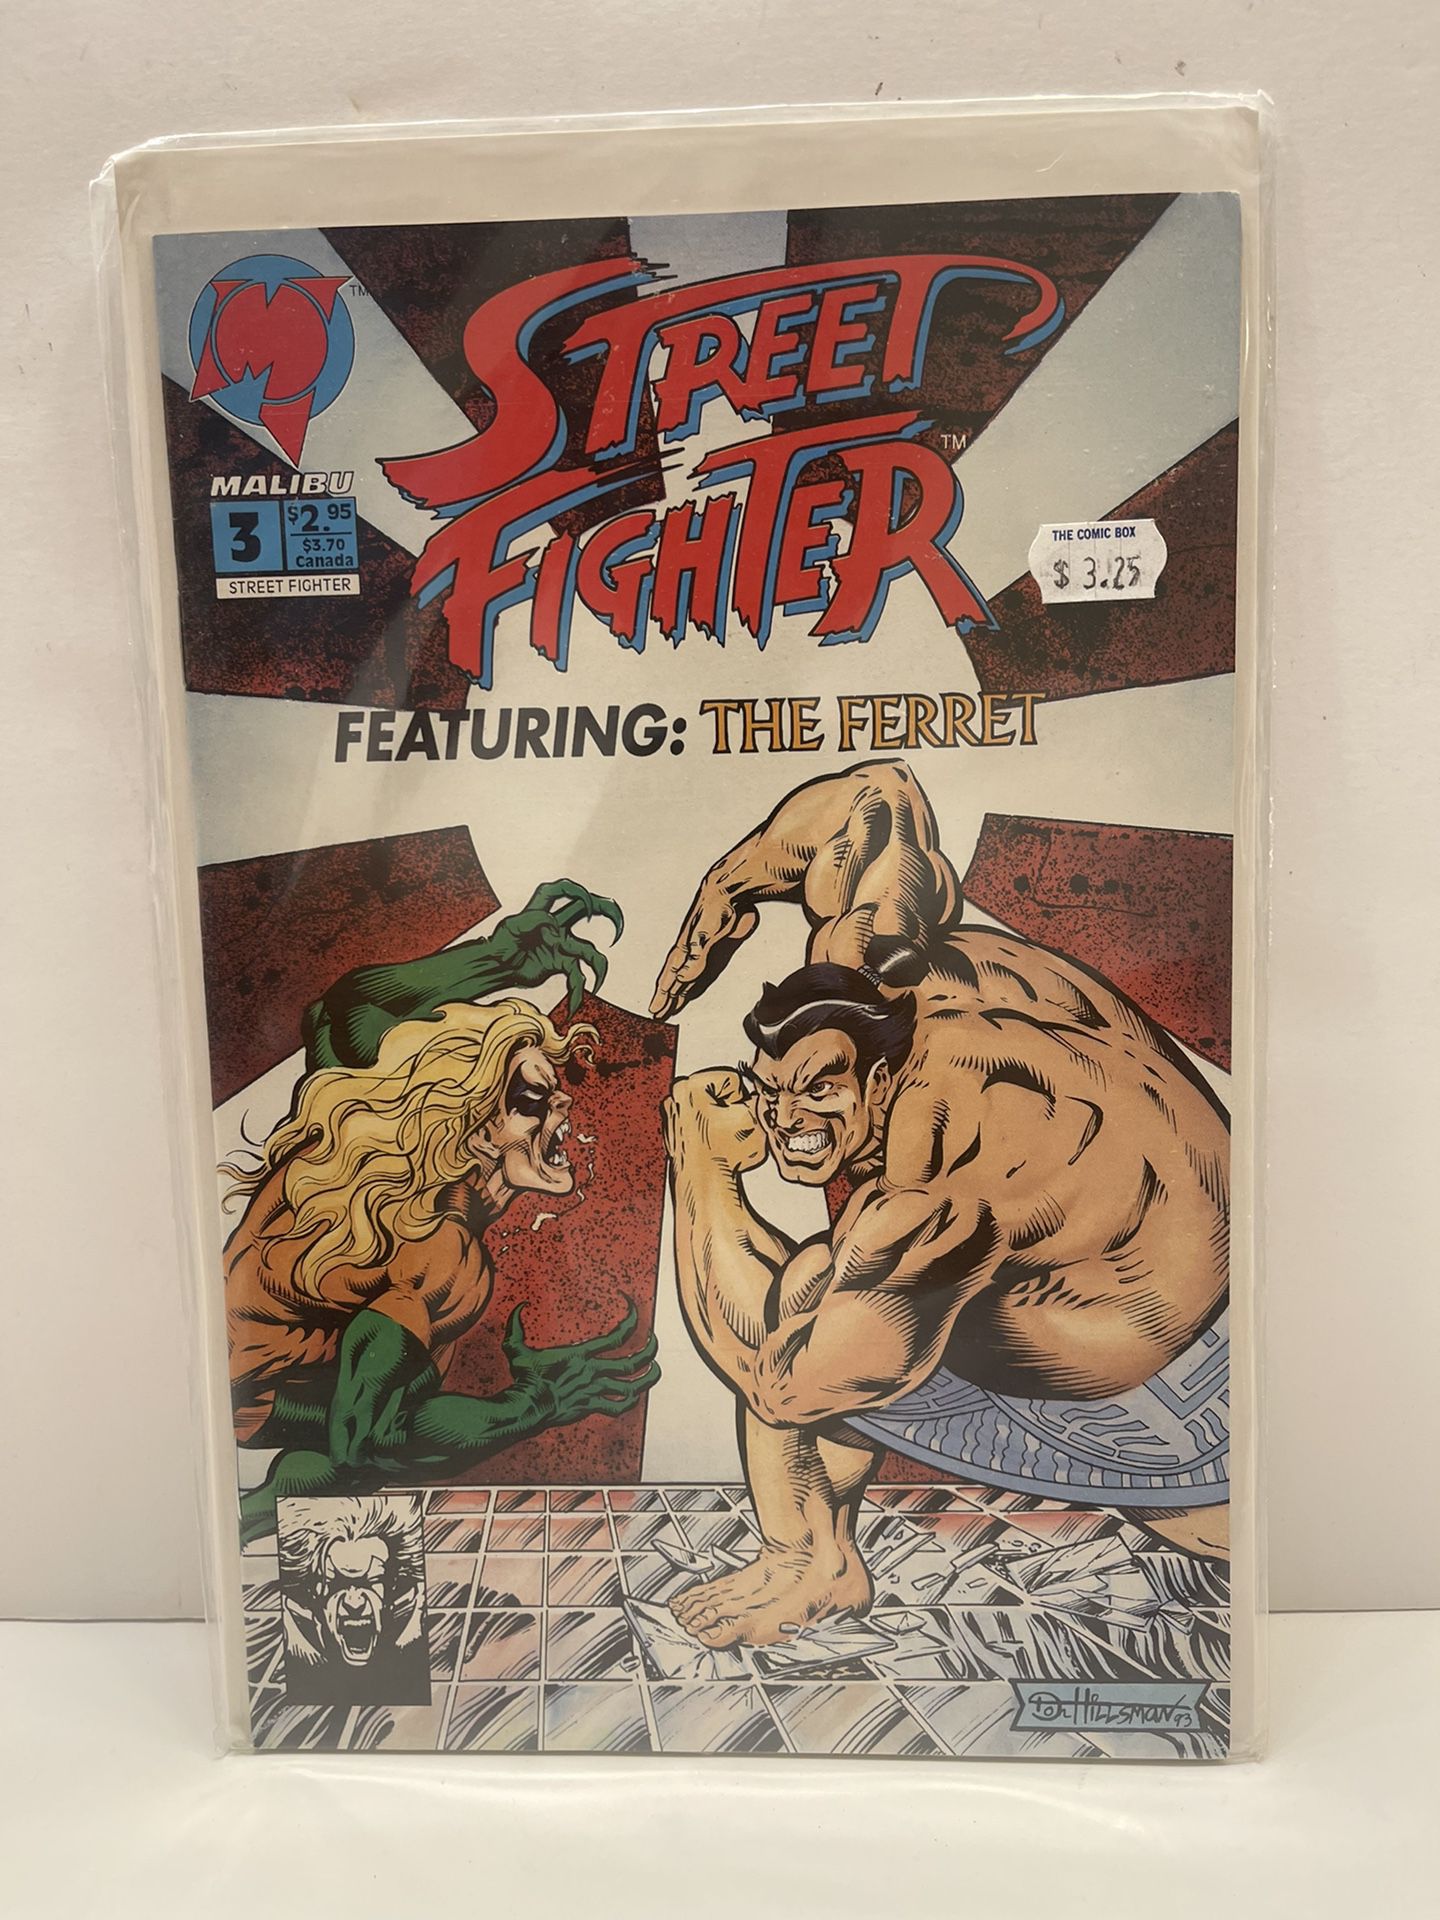 STREET FIGHTER #3 Featuring The Ferret Malibu Comics 1993 Video Game Comic Book 